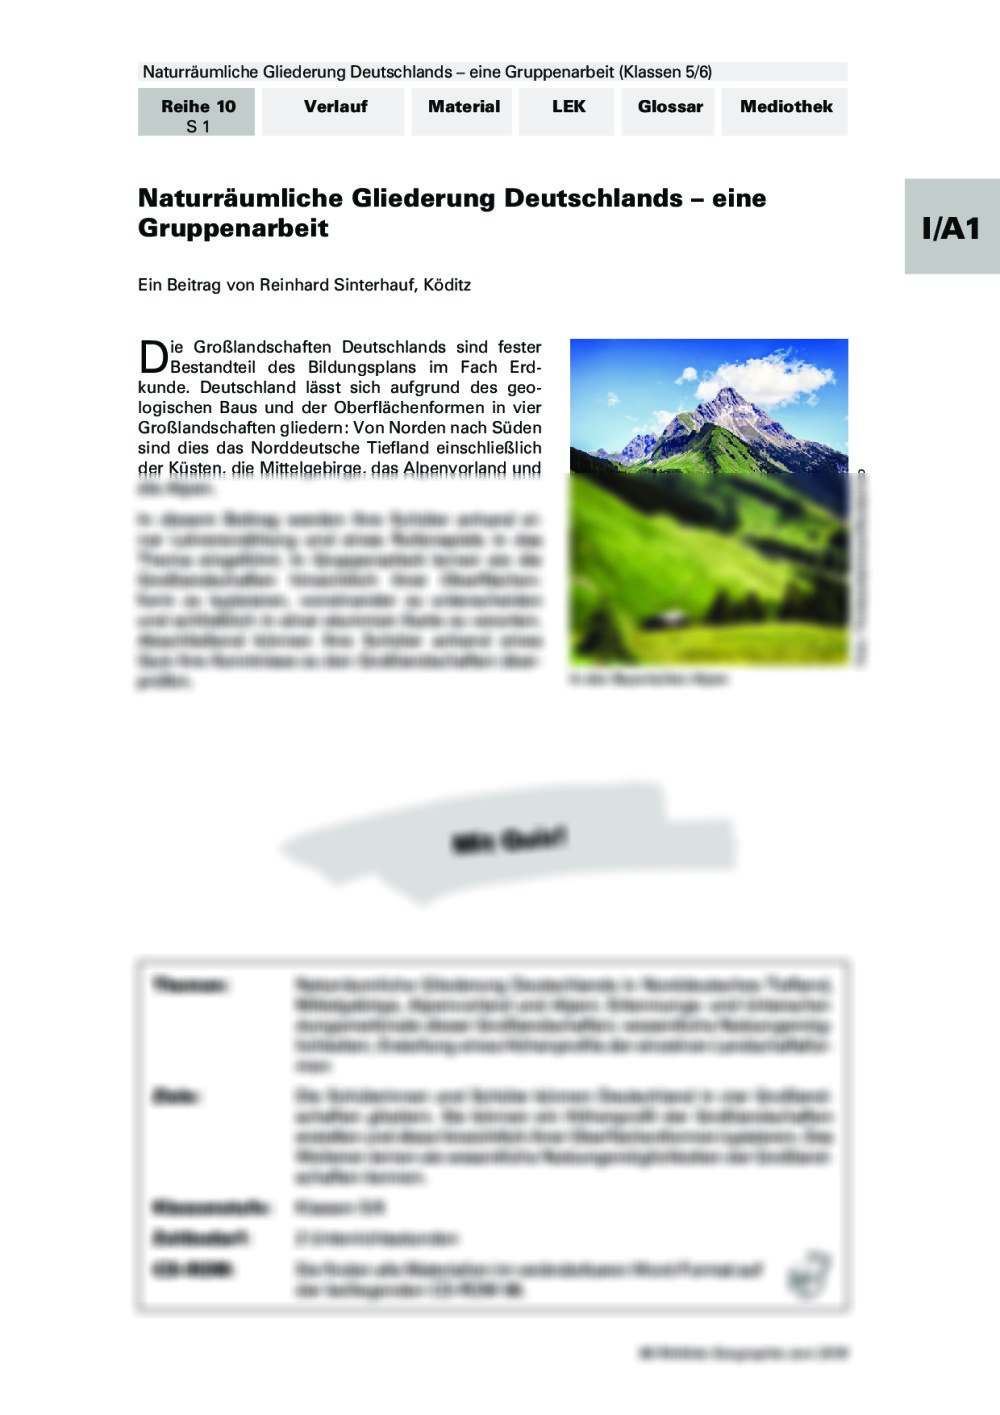 Naturräumliche Gliederung Deutschlands - Seite 1